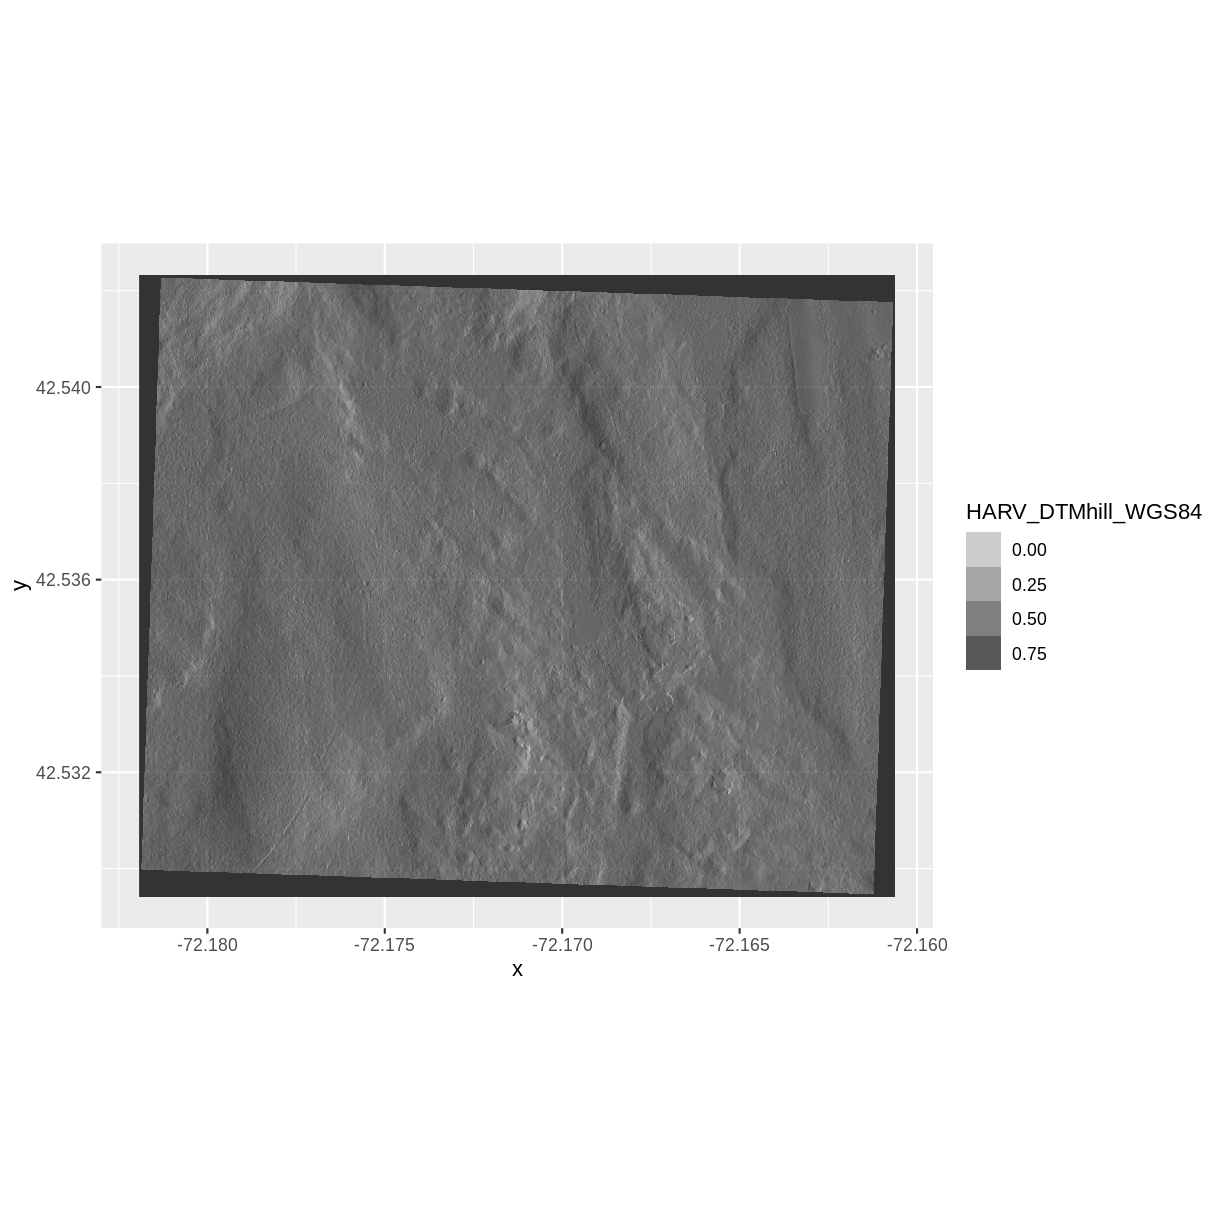 plot of chunk plot-DTM-hill